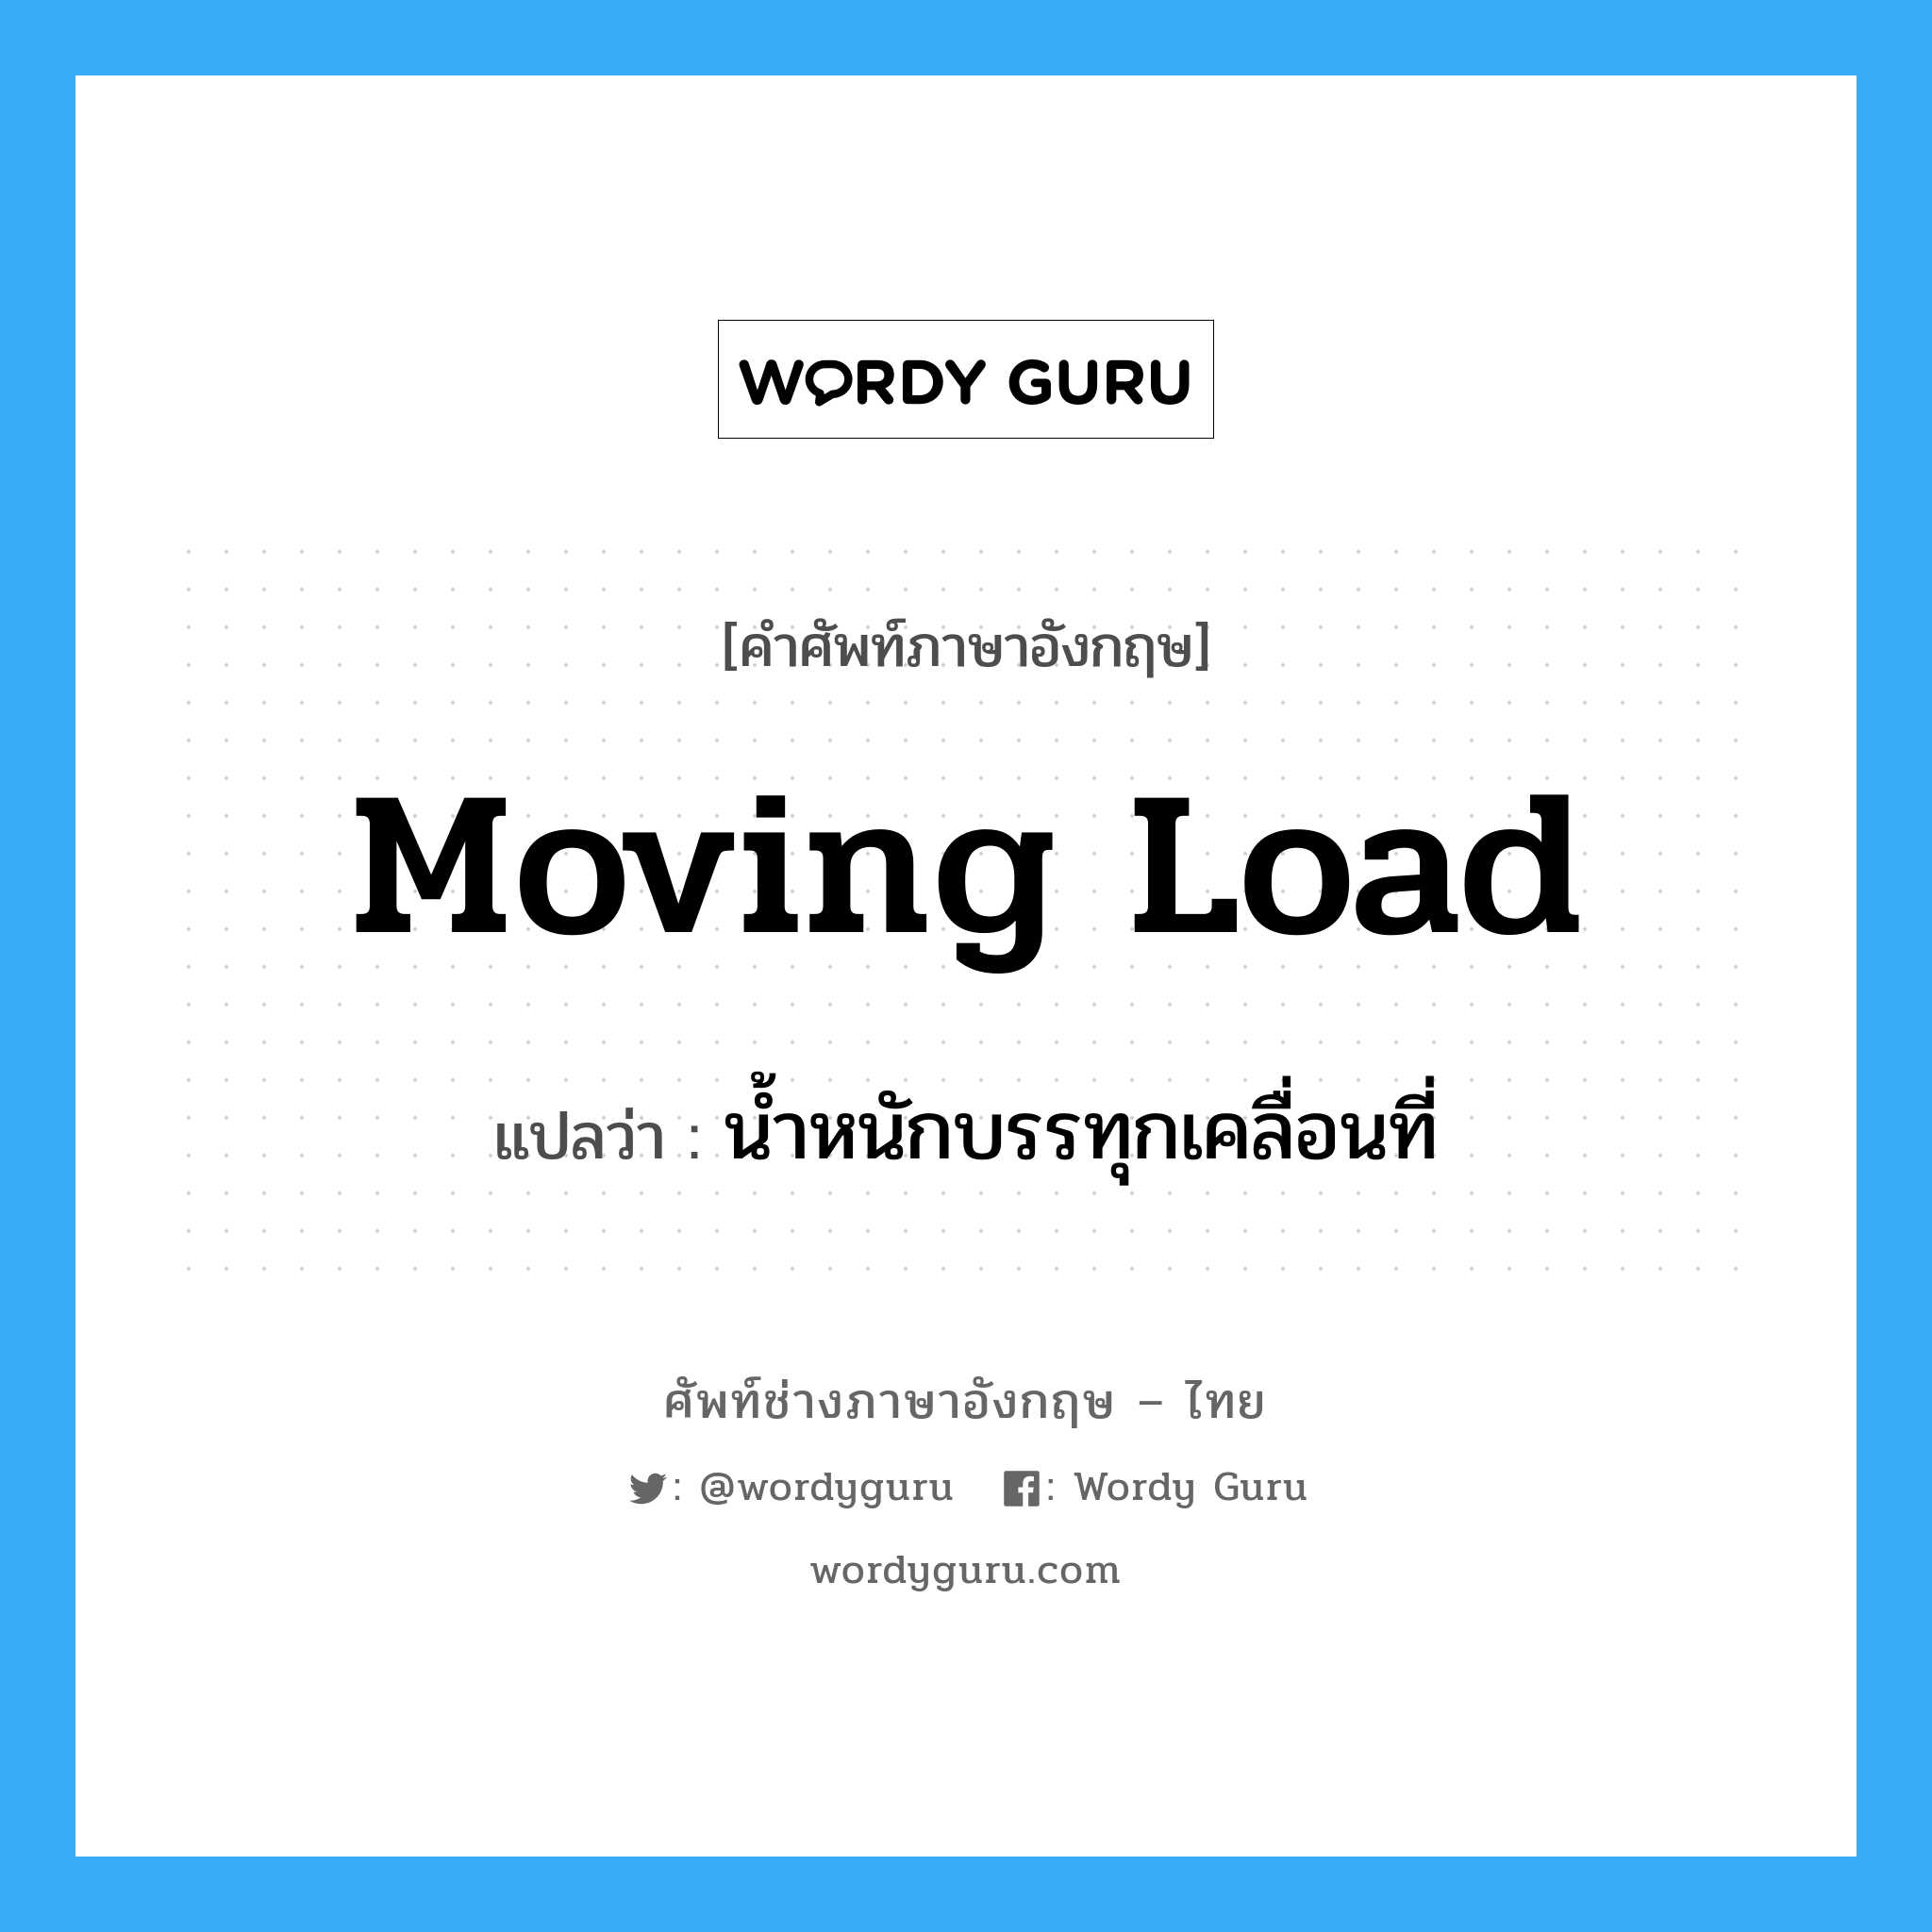 น้ำหนักบรรทุกเคลื่อนที่ ภาษาอังกฤษ?, คำศัพท์ช่างภาษาอังกฤษ - ไทย น้ำหนักบรรทุกเคลื่อนที่ คำศัพท์ภาษาอังกฤษ น้ำหนักบรรทุกเคลื่อนที่ แปลว่า moving load